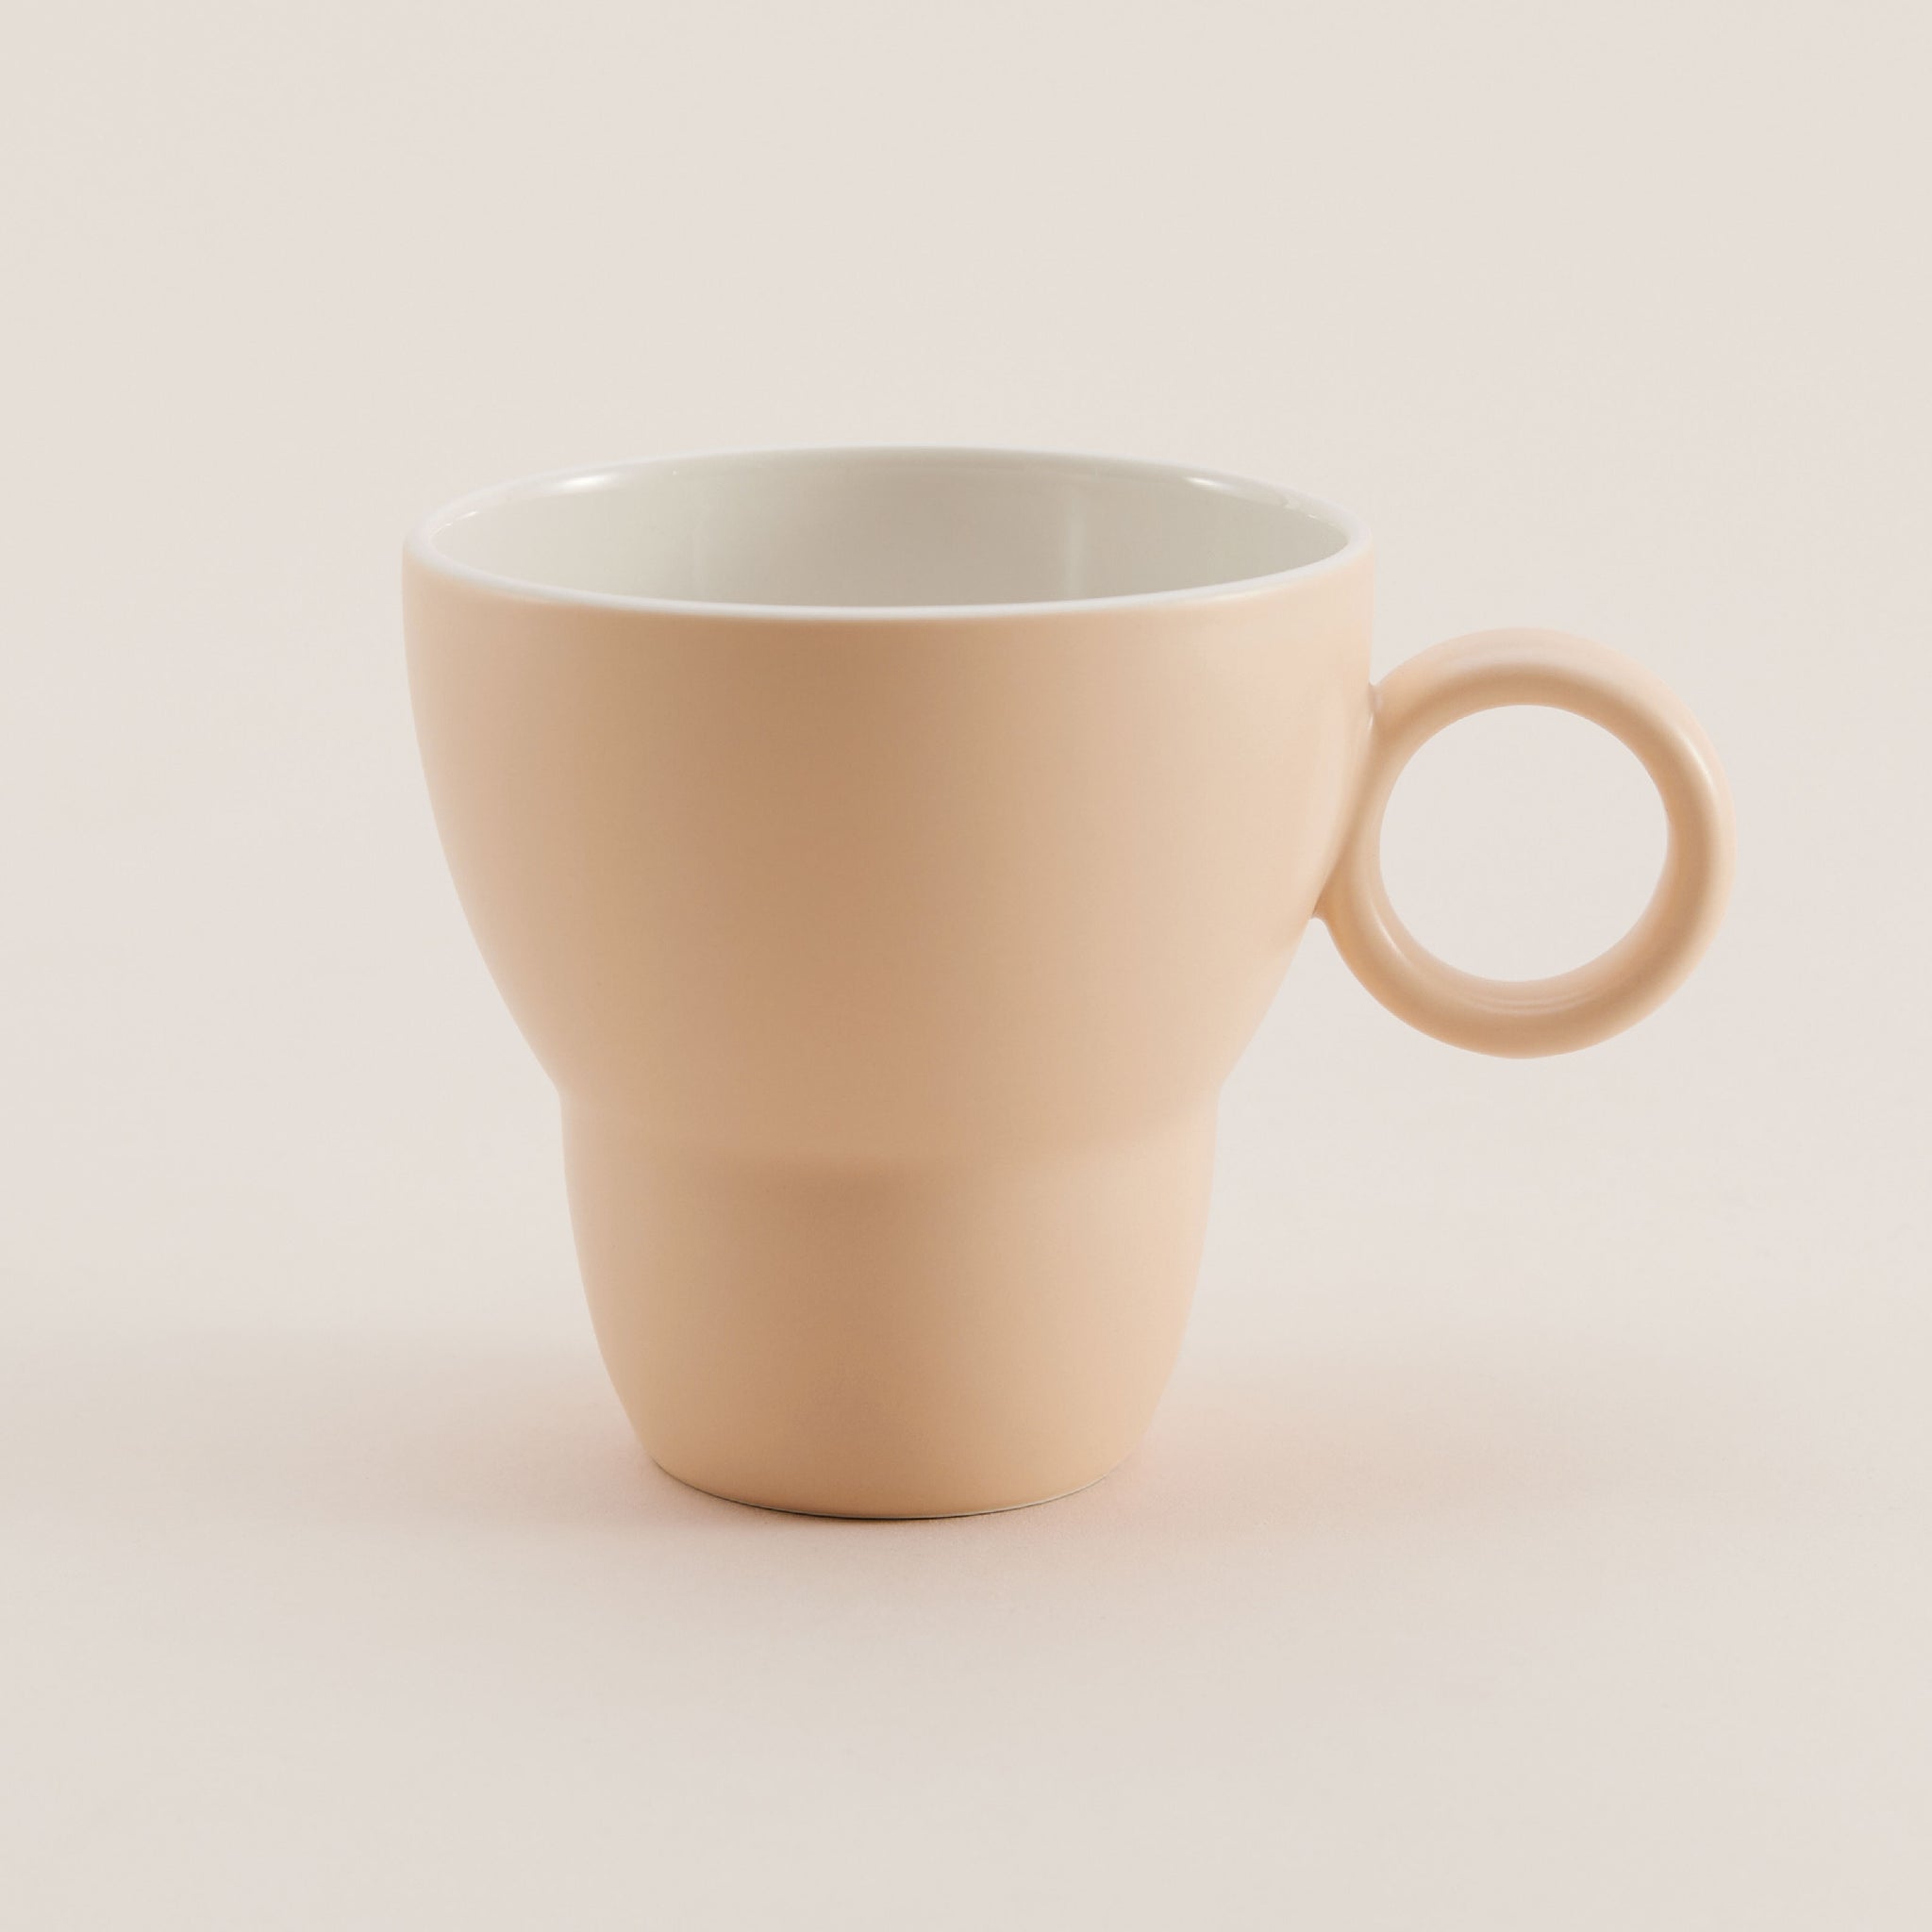 Bowlbowl Origin & Vintage Mug | แก้วมัค